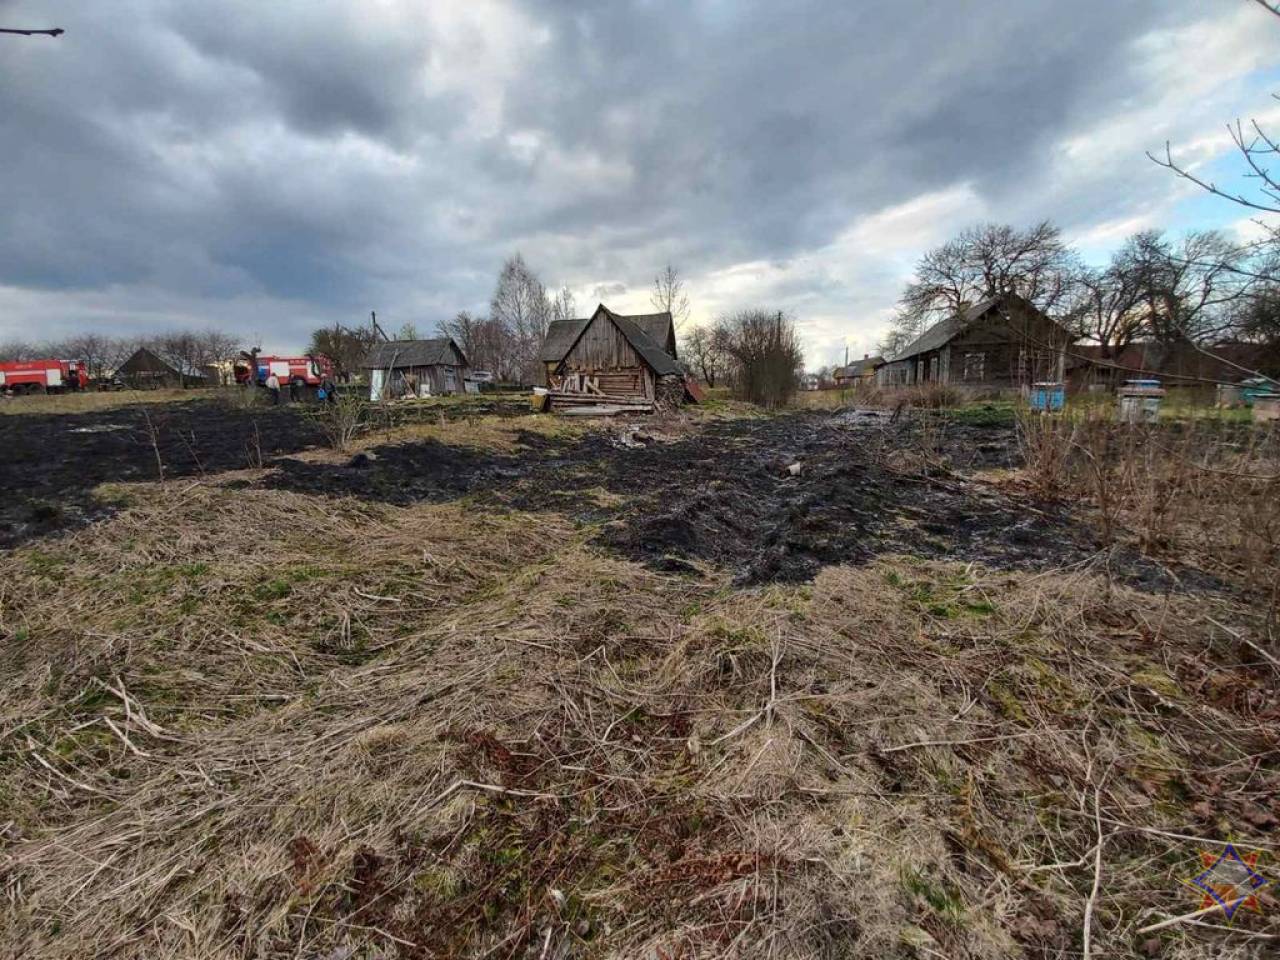 Сезон начался: за выходные спасатели Гродненской области 6 раз выезжали на тушение сухой травы